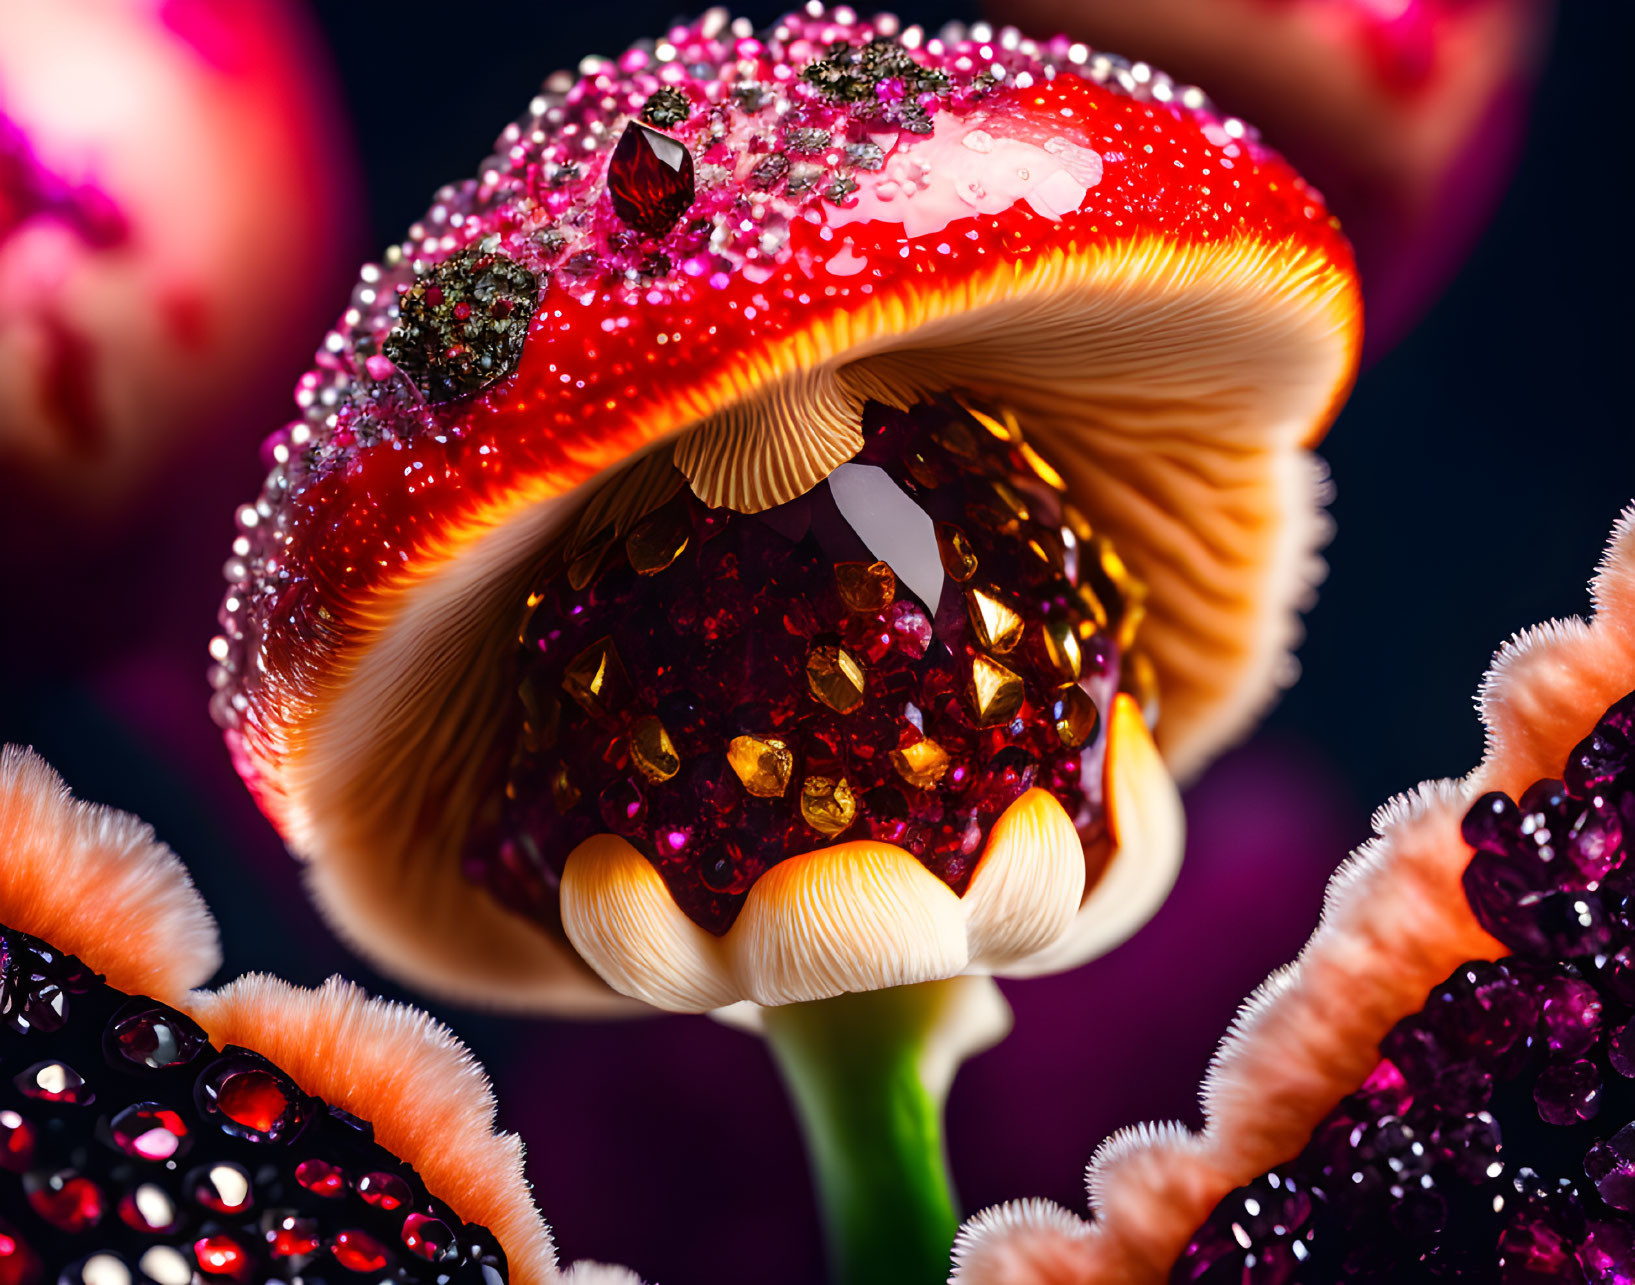 The Queen Mushroom